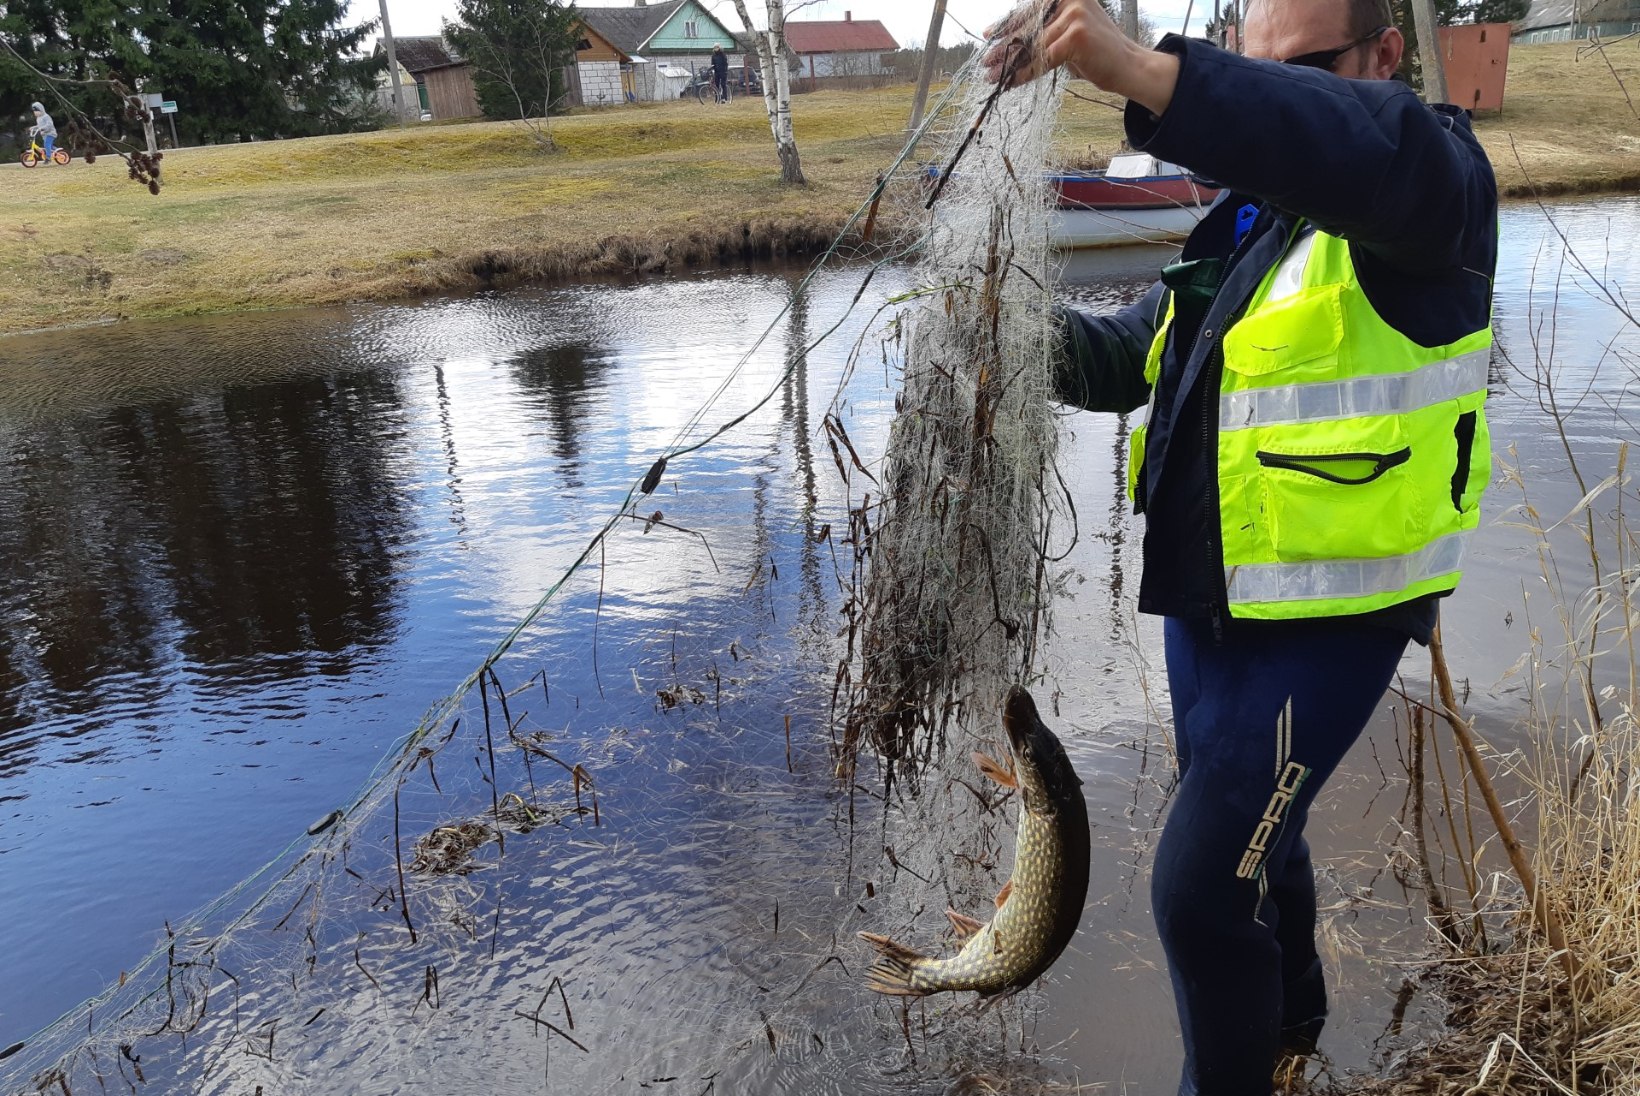 Probleem: Eestimaa veekogudes tapavad kalu omaniketa nakkevõrgud